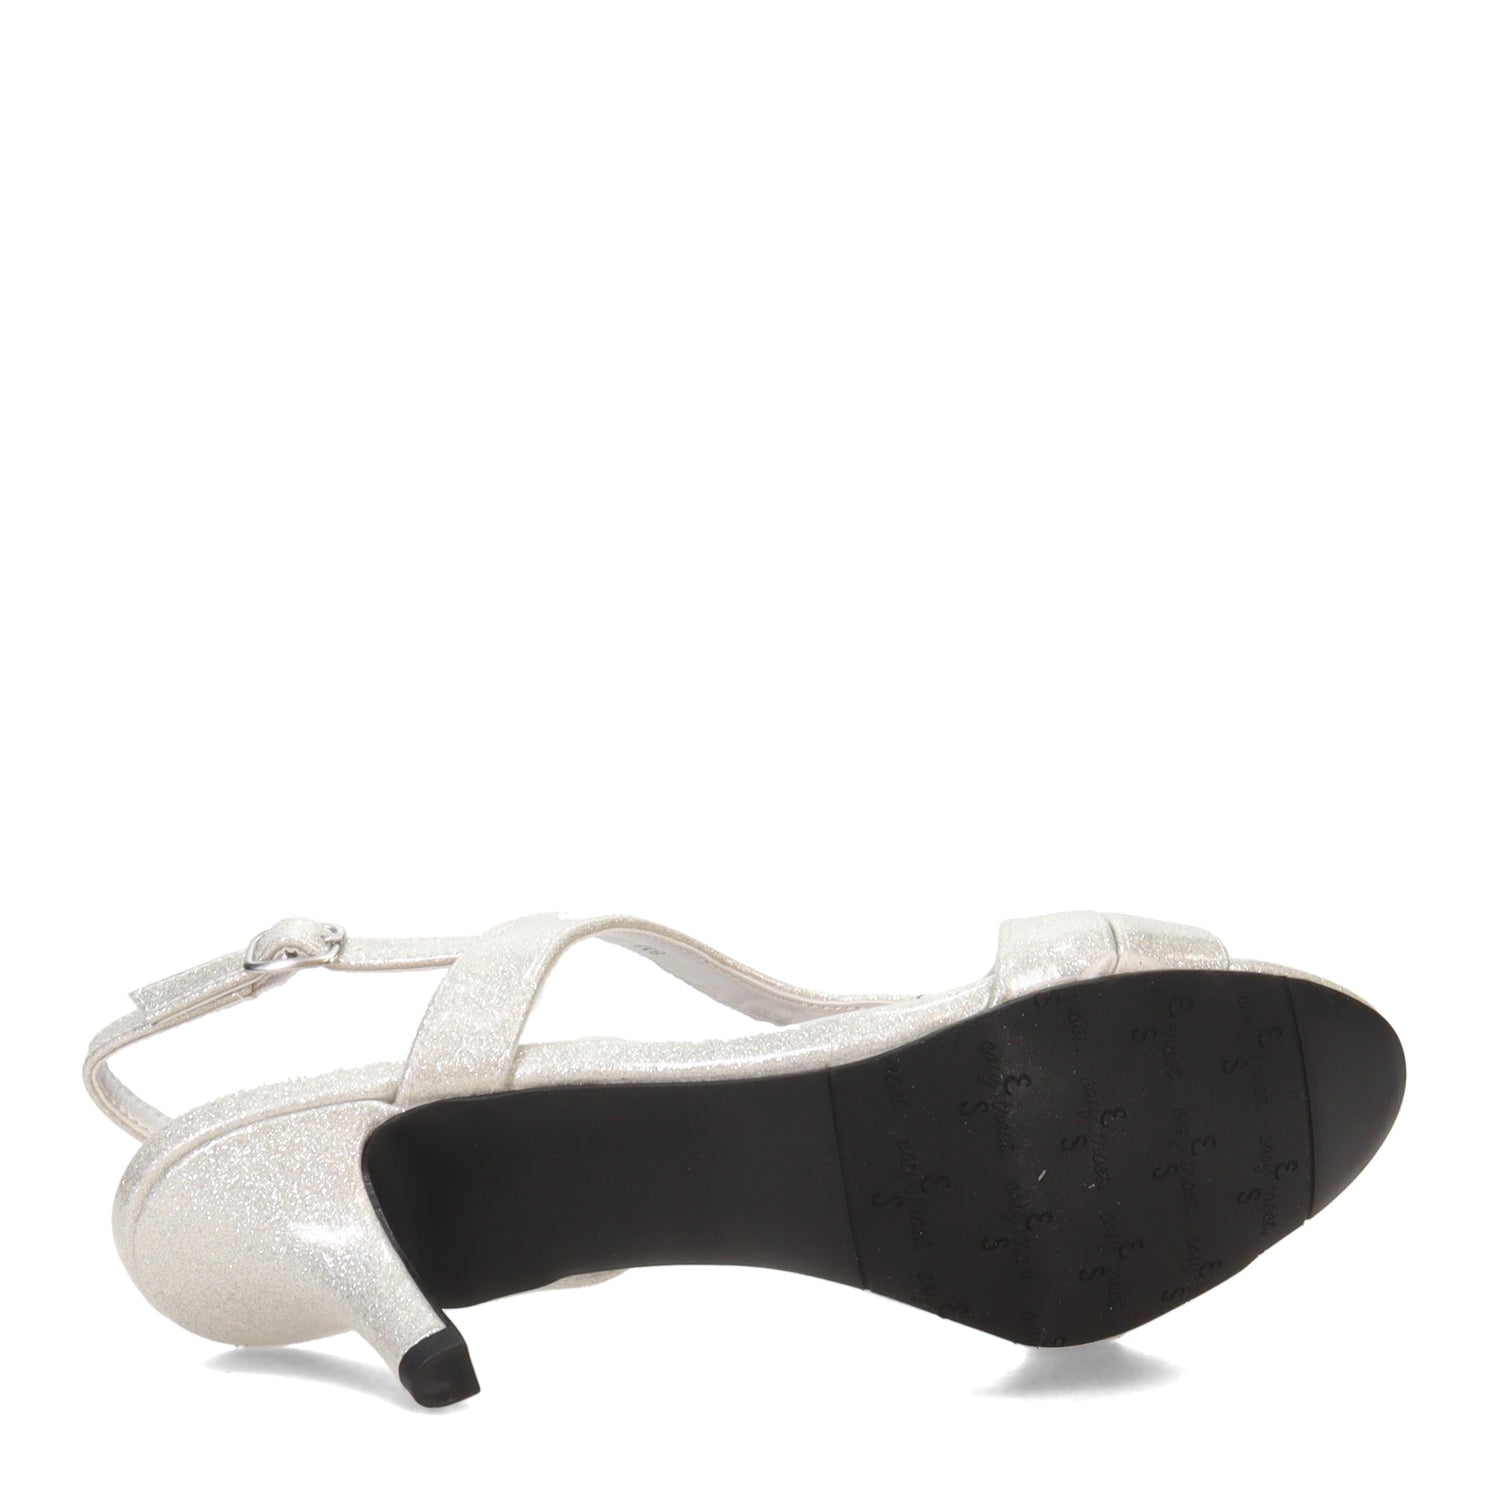 Peltz Shoes  Women's Easy Street Bree Sandal SILVER 31-6667